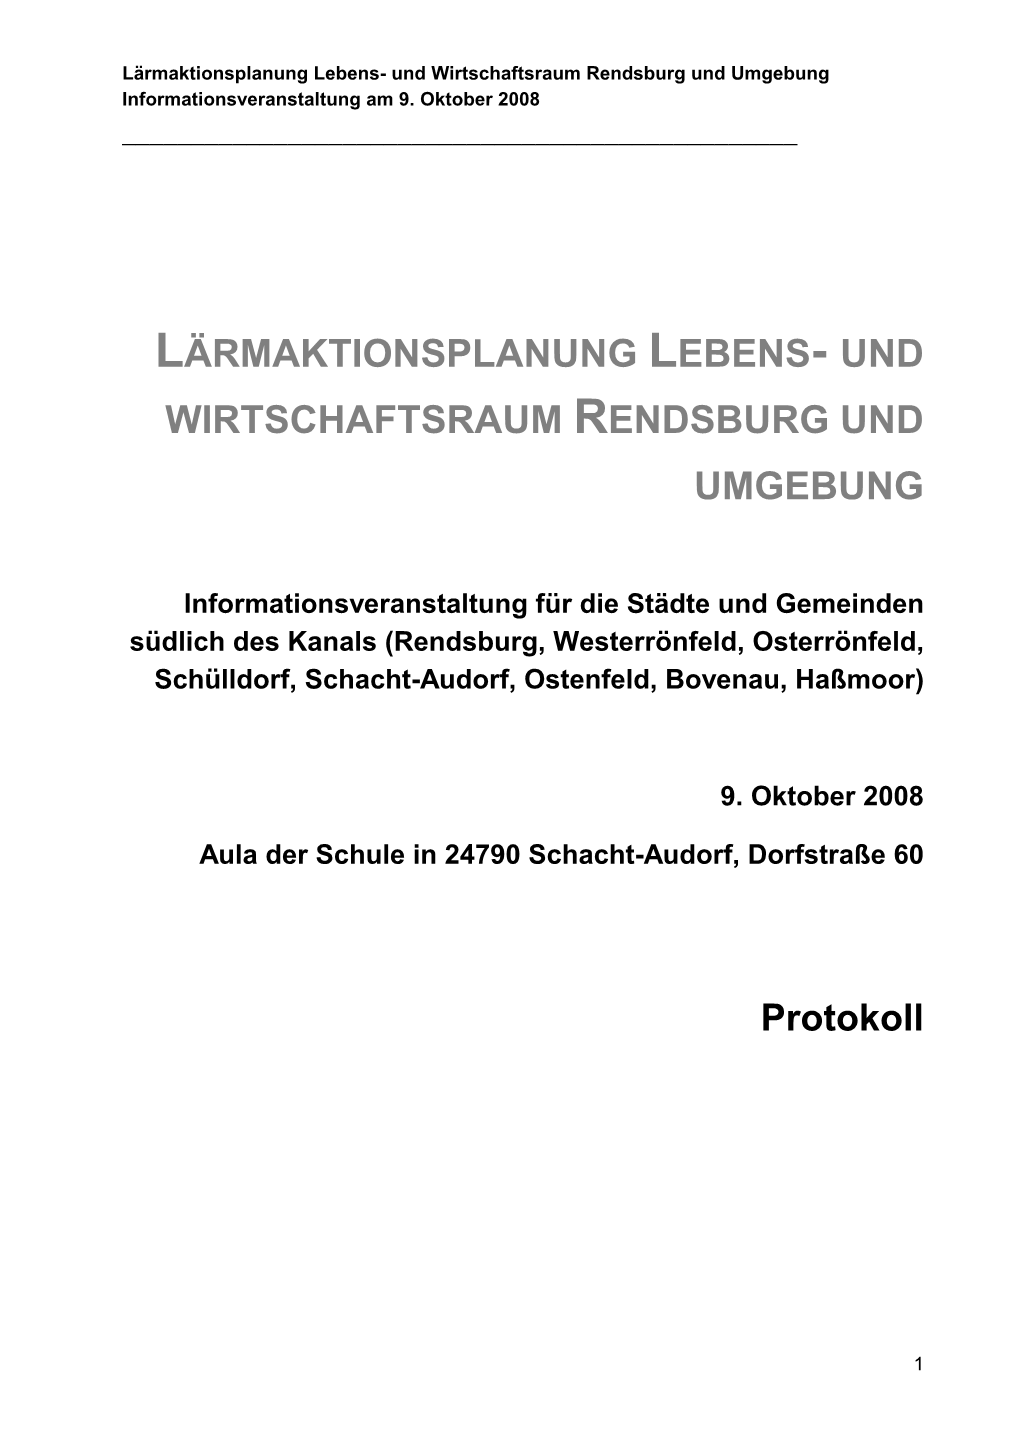 Protokoll Rendsburg 9-10-08